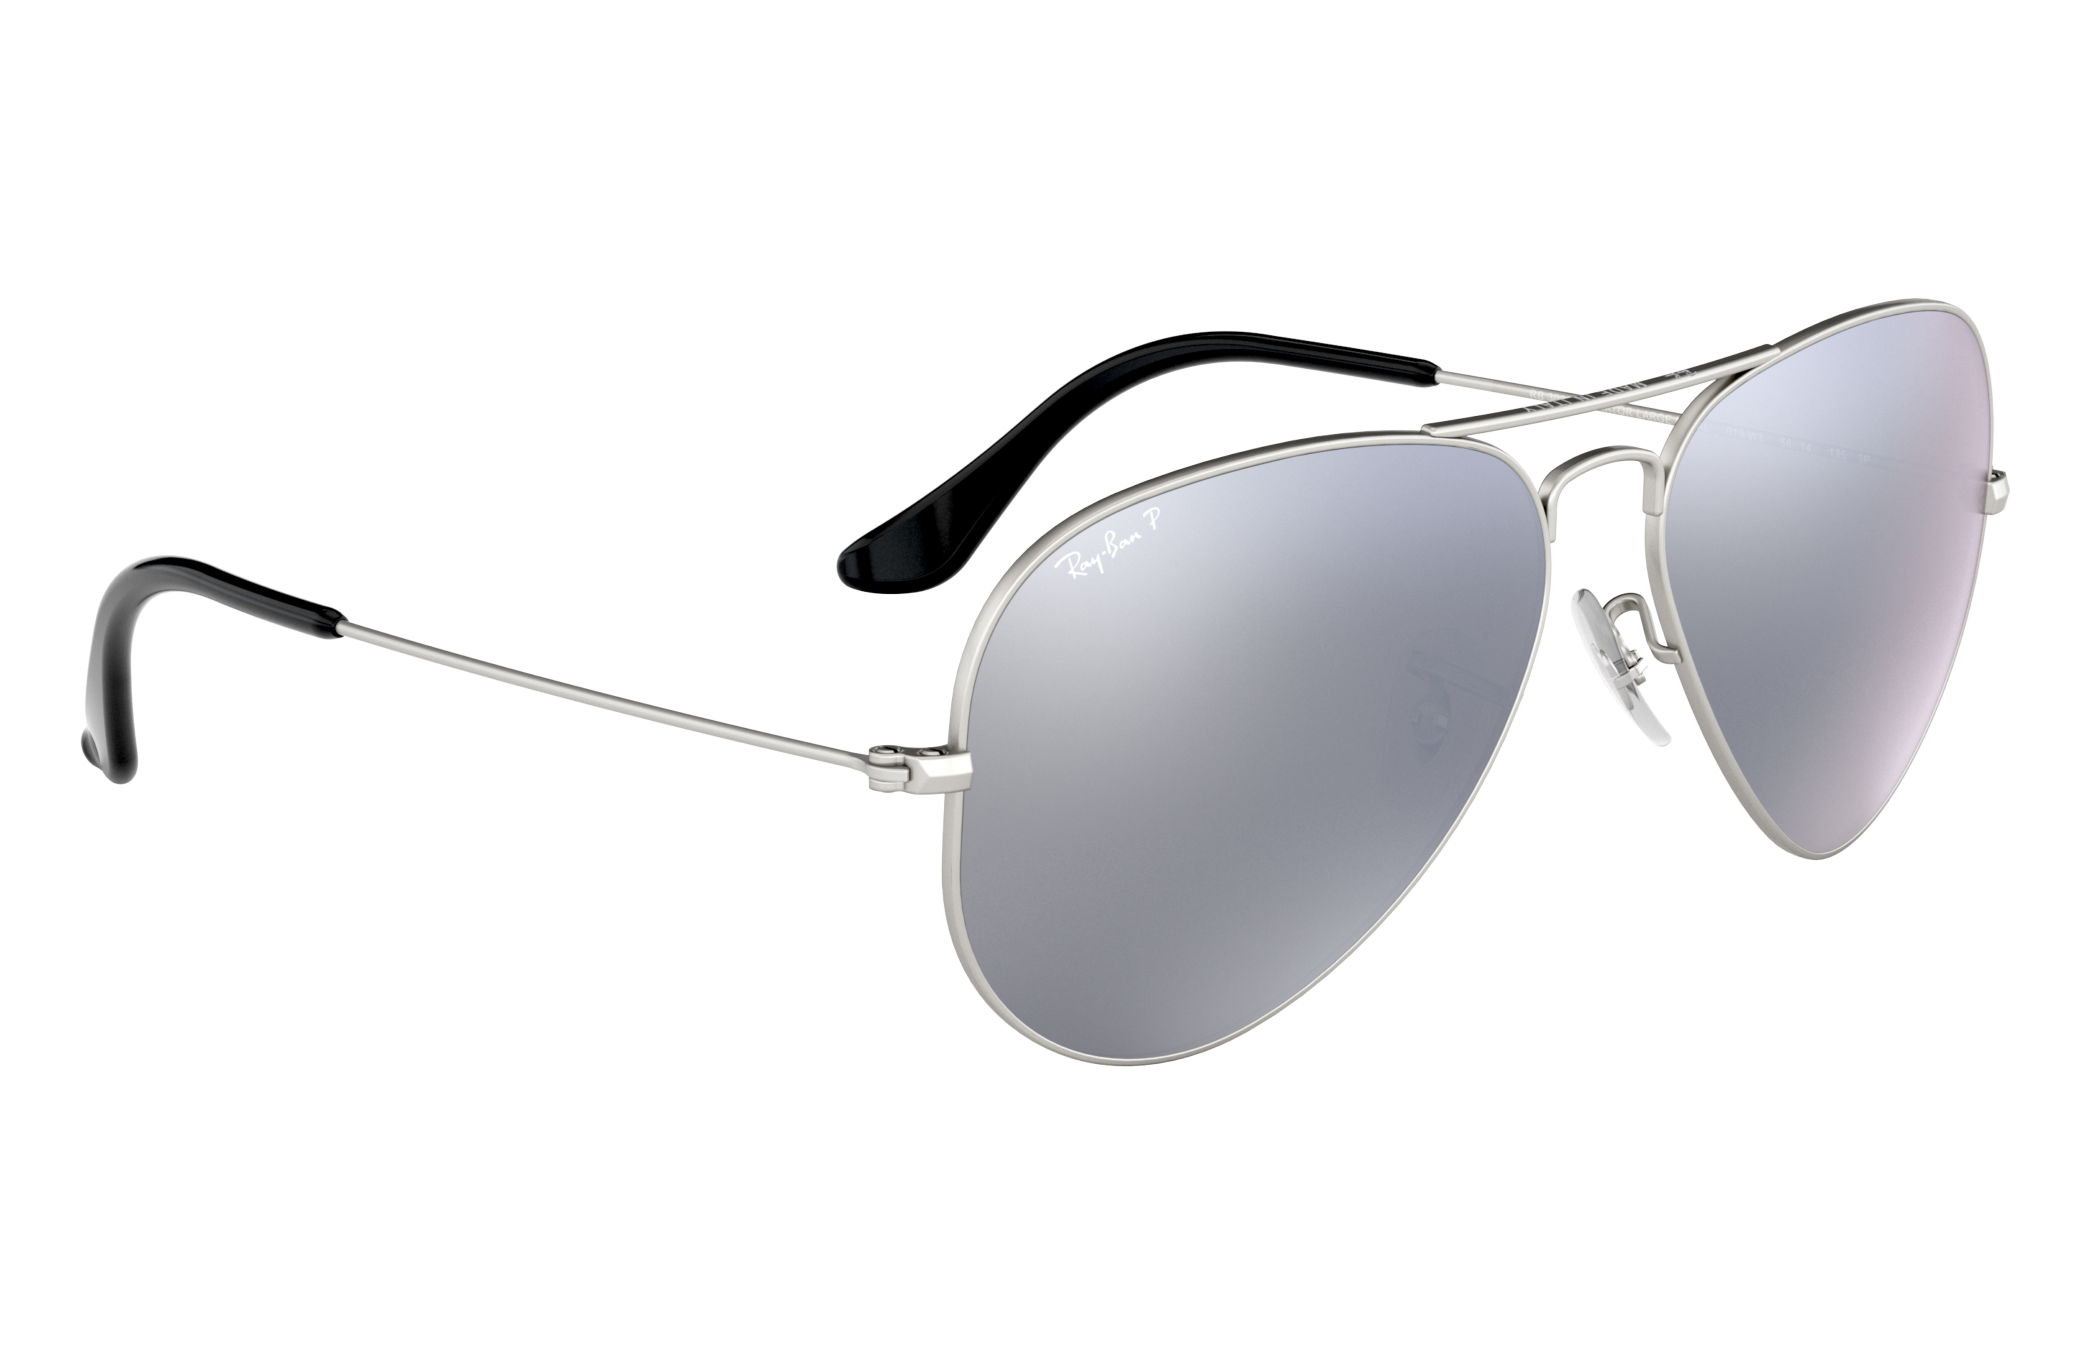 Lunettes de soleil PILOTES LUNETTES aviateur lunettes lunettes miroir argent titrée 